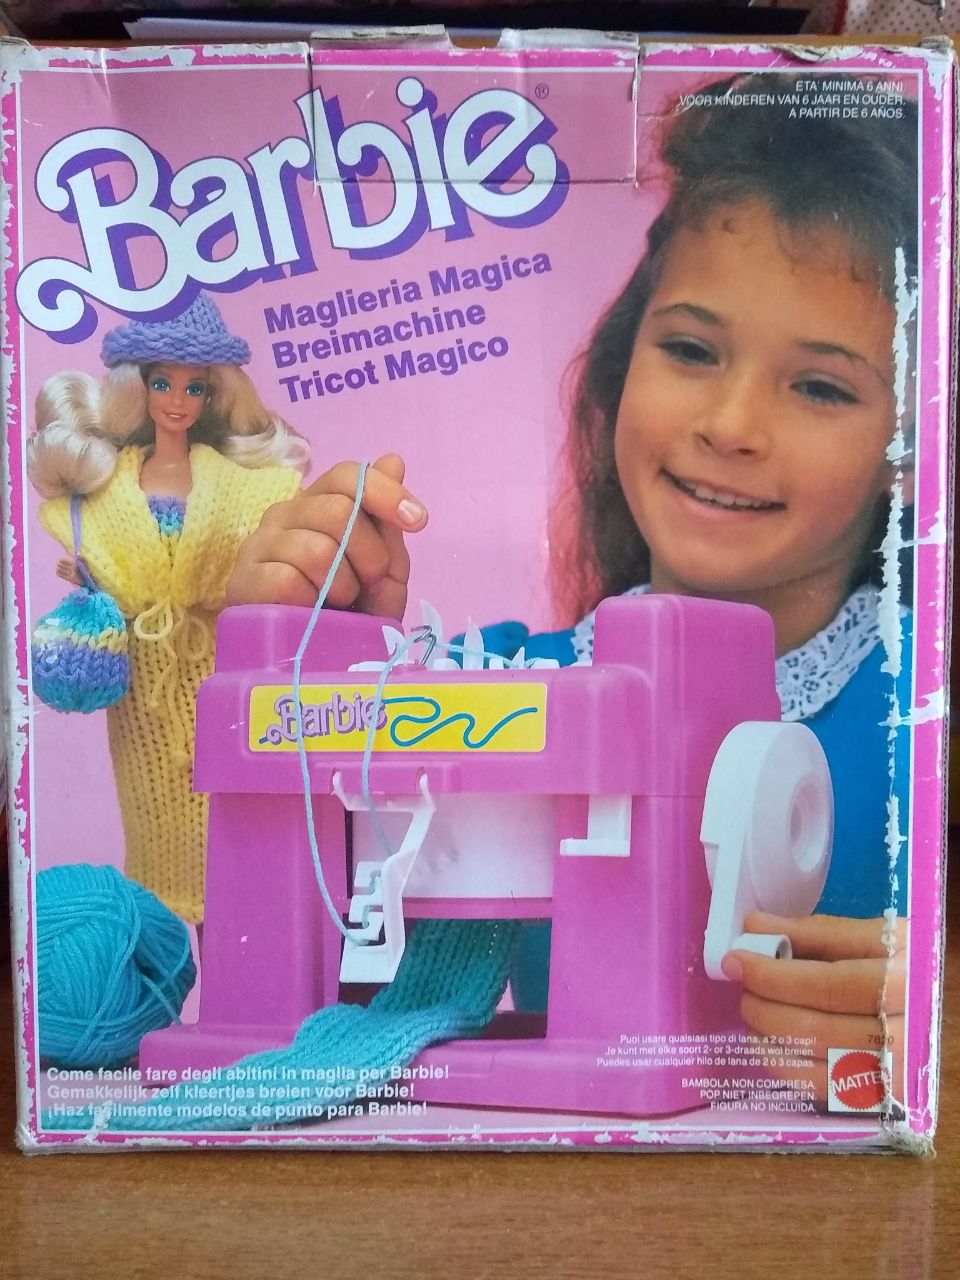 barbie - Barbie Mattel Maglieria Magica anni 80-90 Msg15110